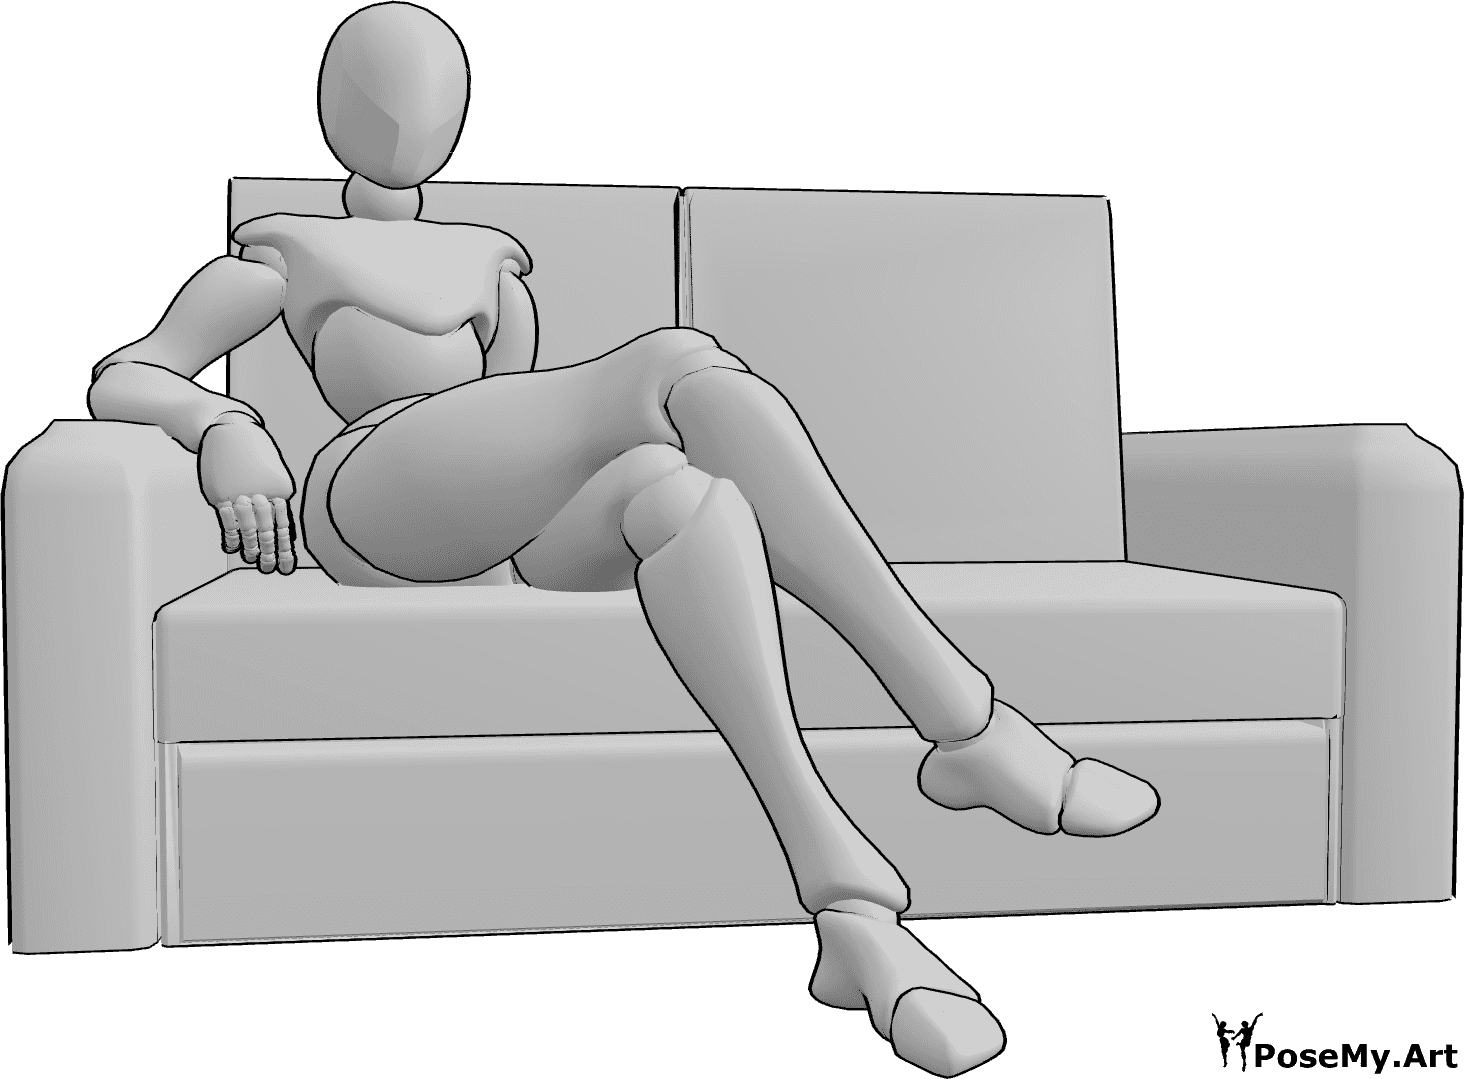 Riferimento alle pose- Posizione comoda del divano da seduti - La donna è seduta comodamente sul divano con le gambe incrociate